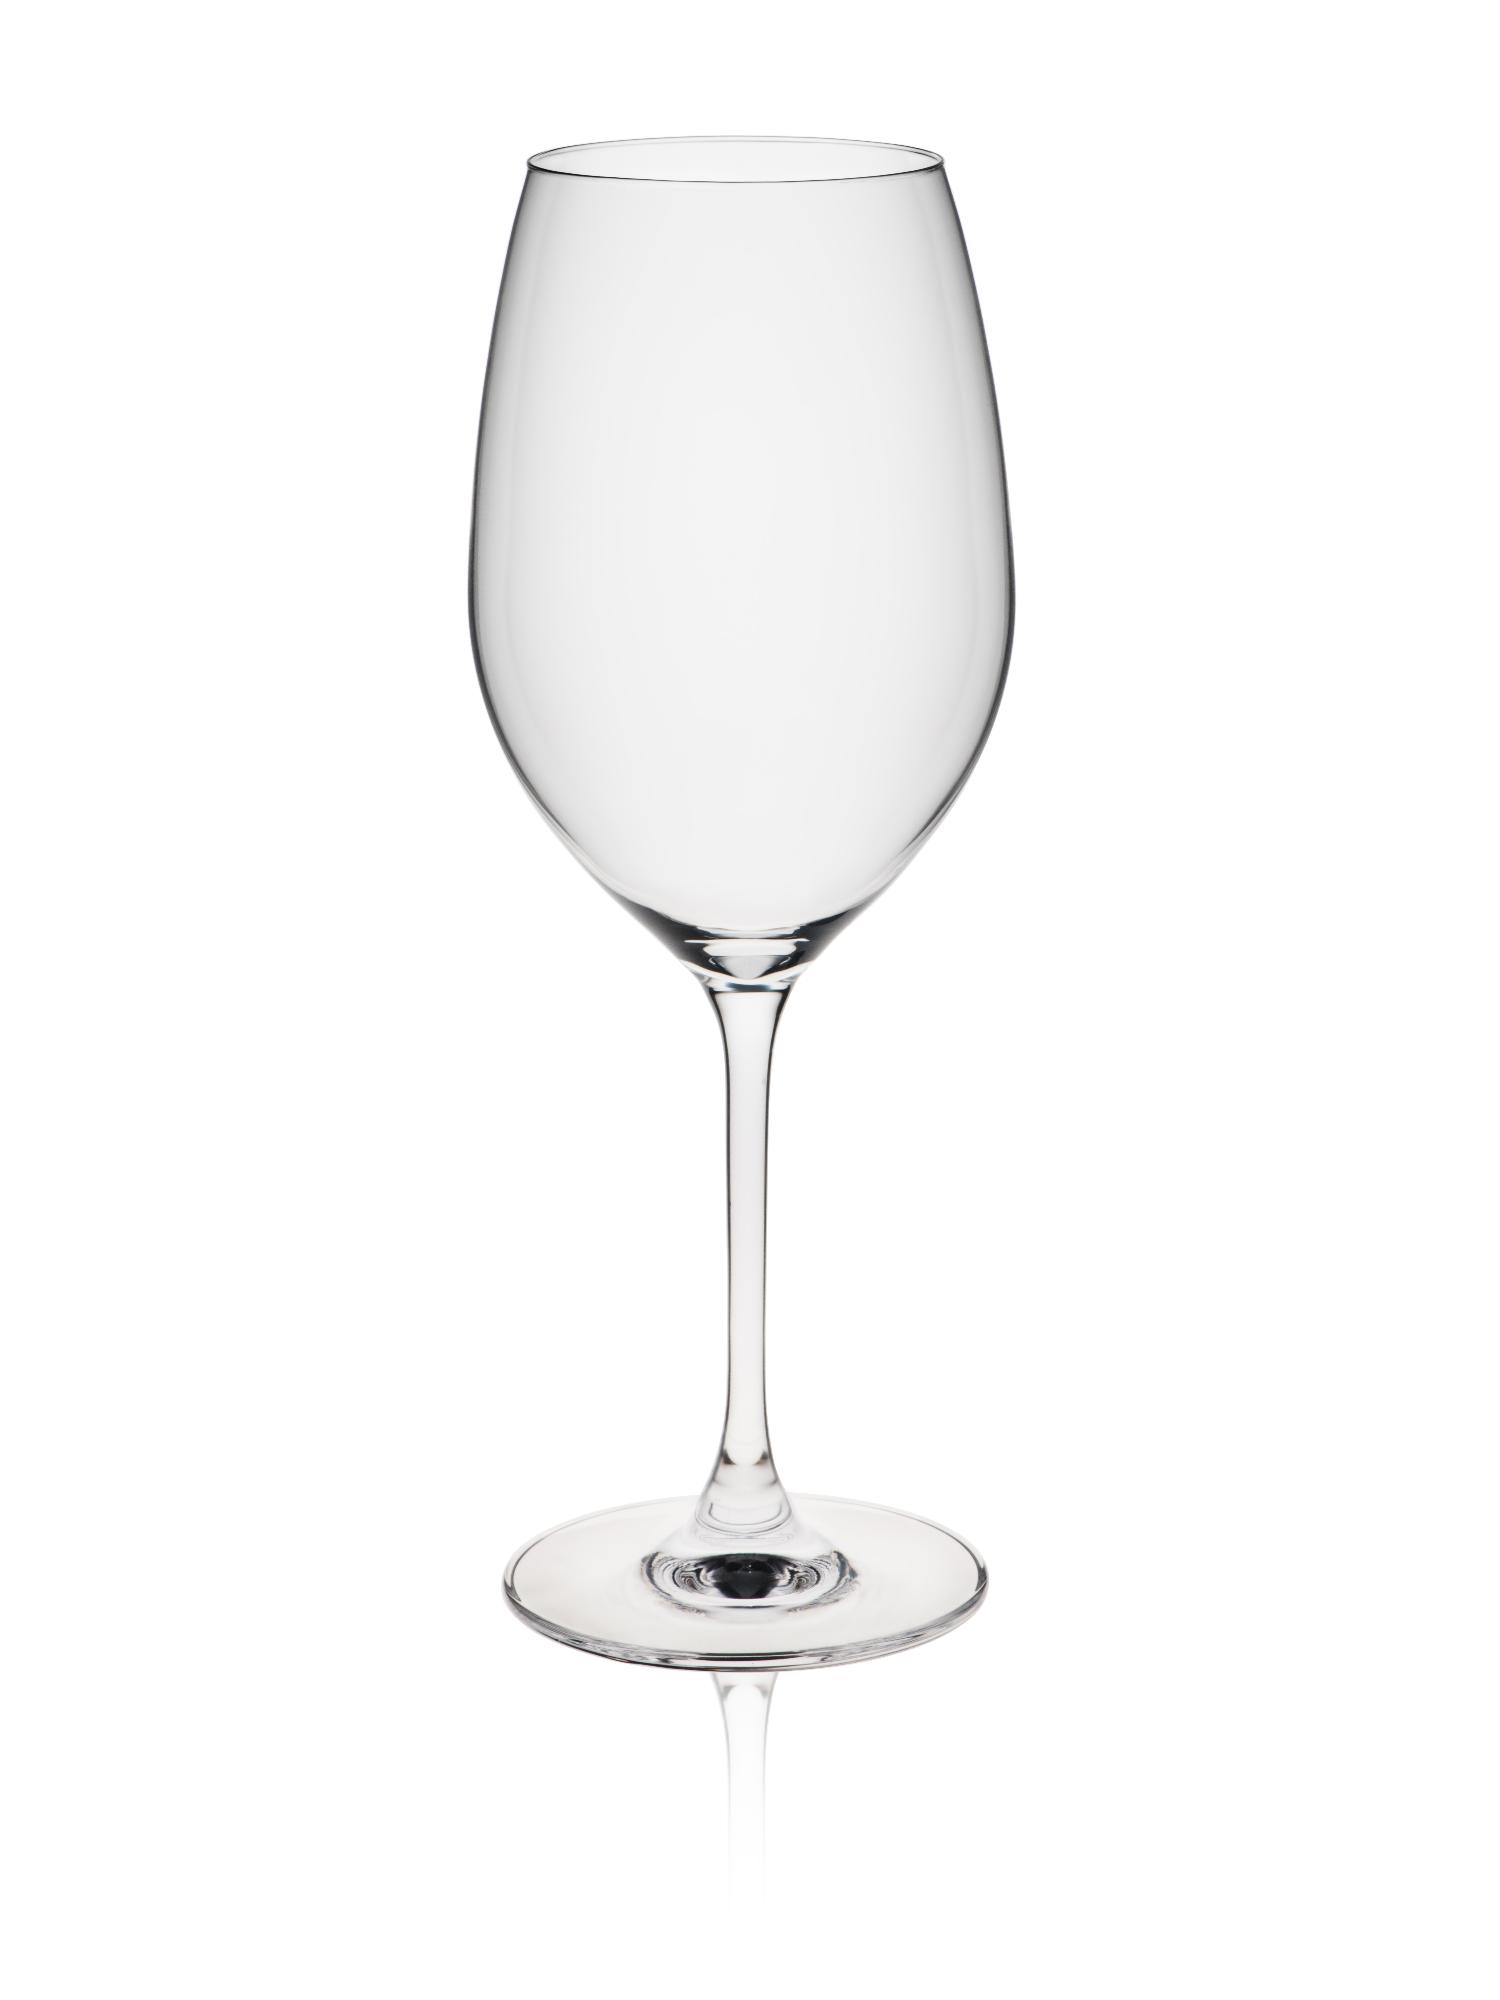 Le Vin Bordeaux glass, 600ml